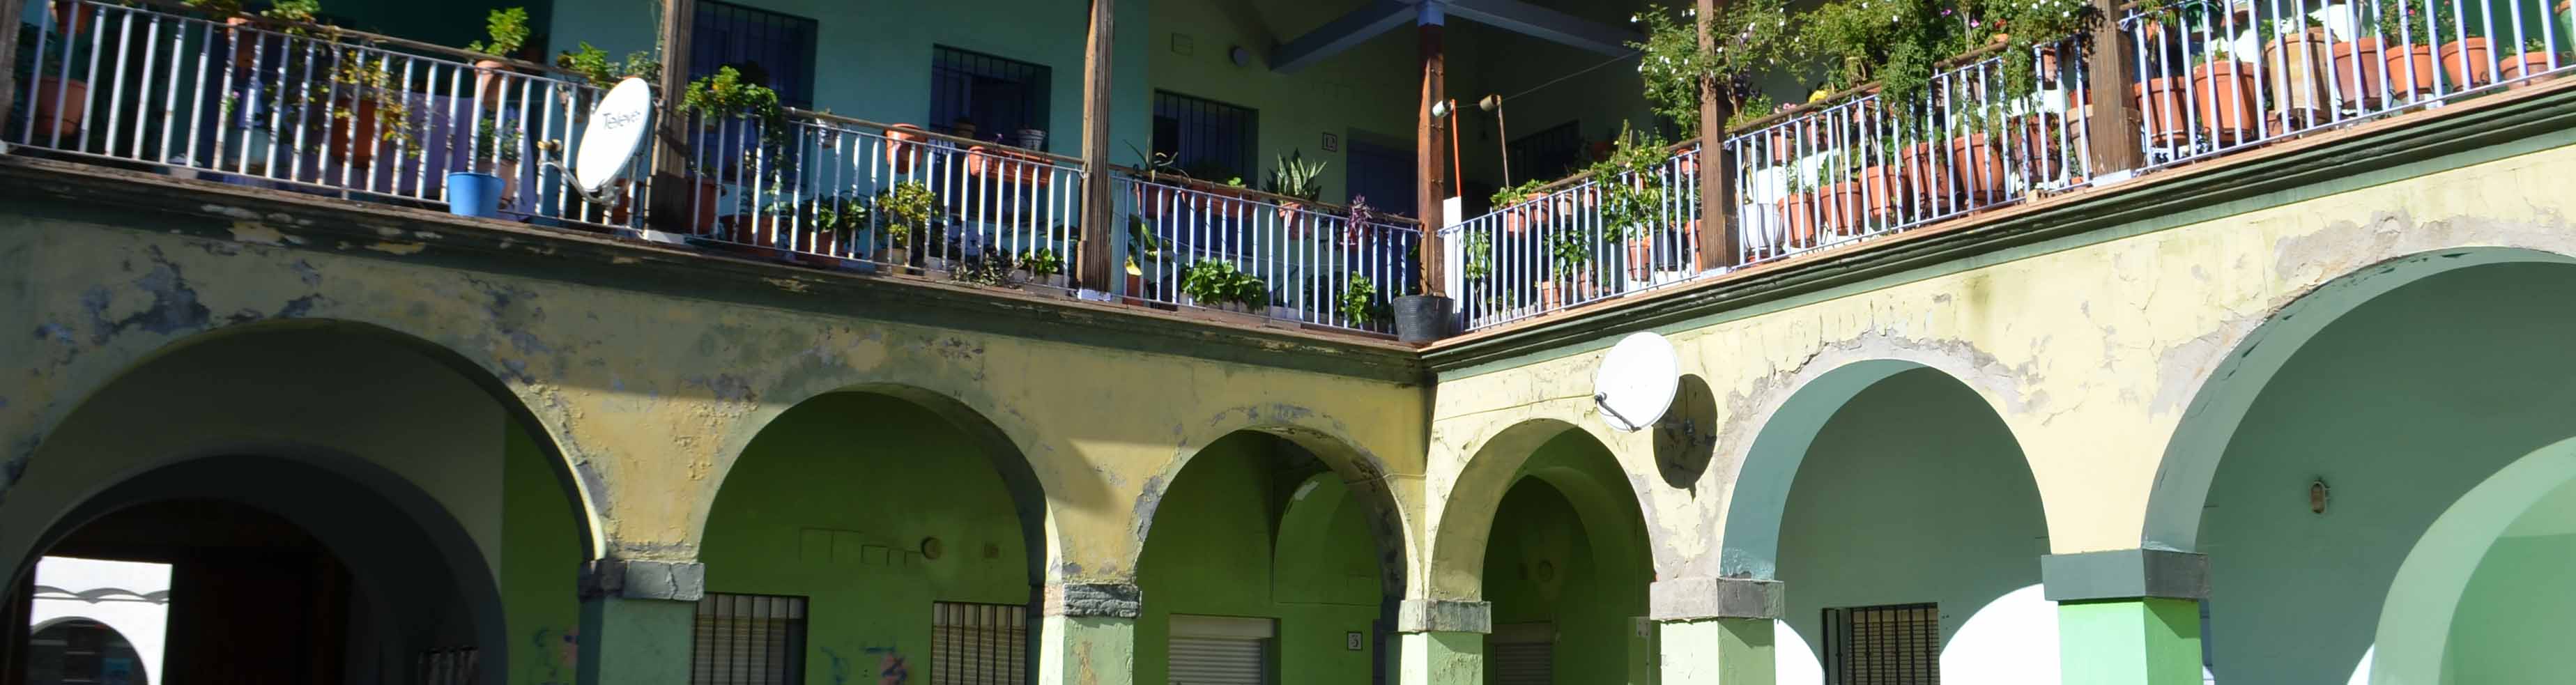 El cuartel de Caballería de Utrera acoge una veintena de viviendas sociales